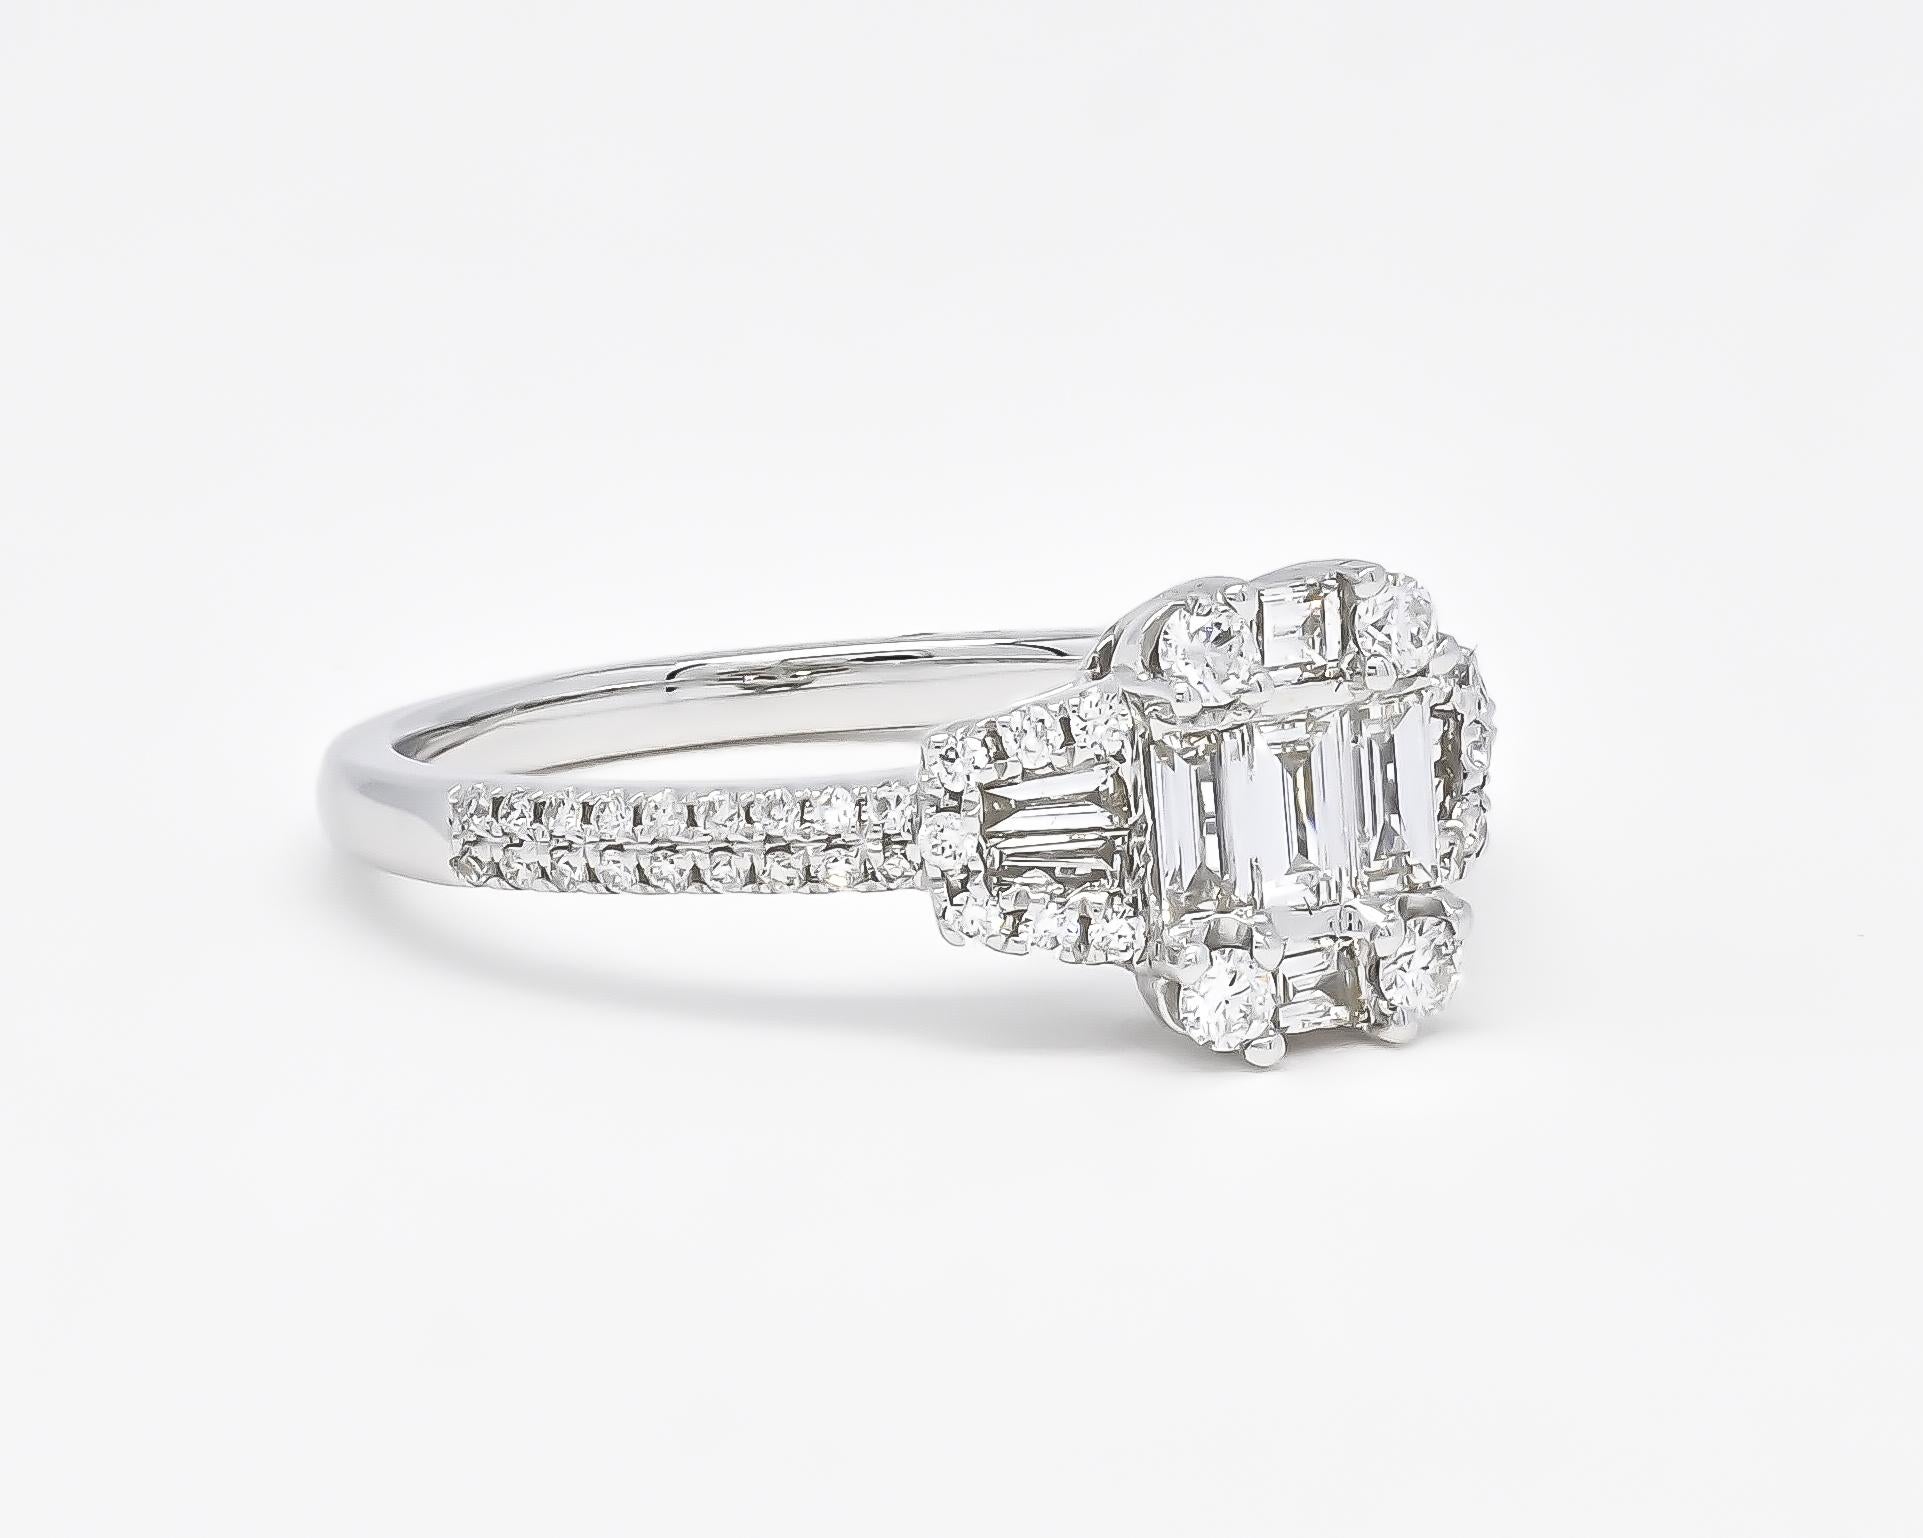 Erleben Sie Eleganz und Raffinesse mit unserem diamantenen Halo-Verlobungsring aus 18 Karat Weißgold. Dieser sorgfältig gefertigte Ring ist mit einer Gruppe von Baguette- und runden Diamanten besetzt, die Brillanz und Charme ausstrahlen. 

Mit einem